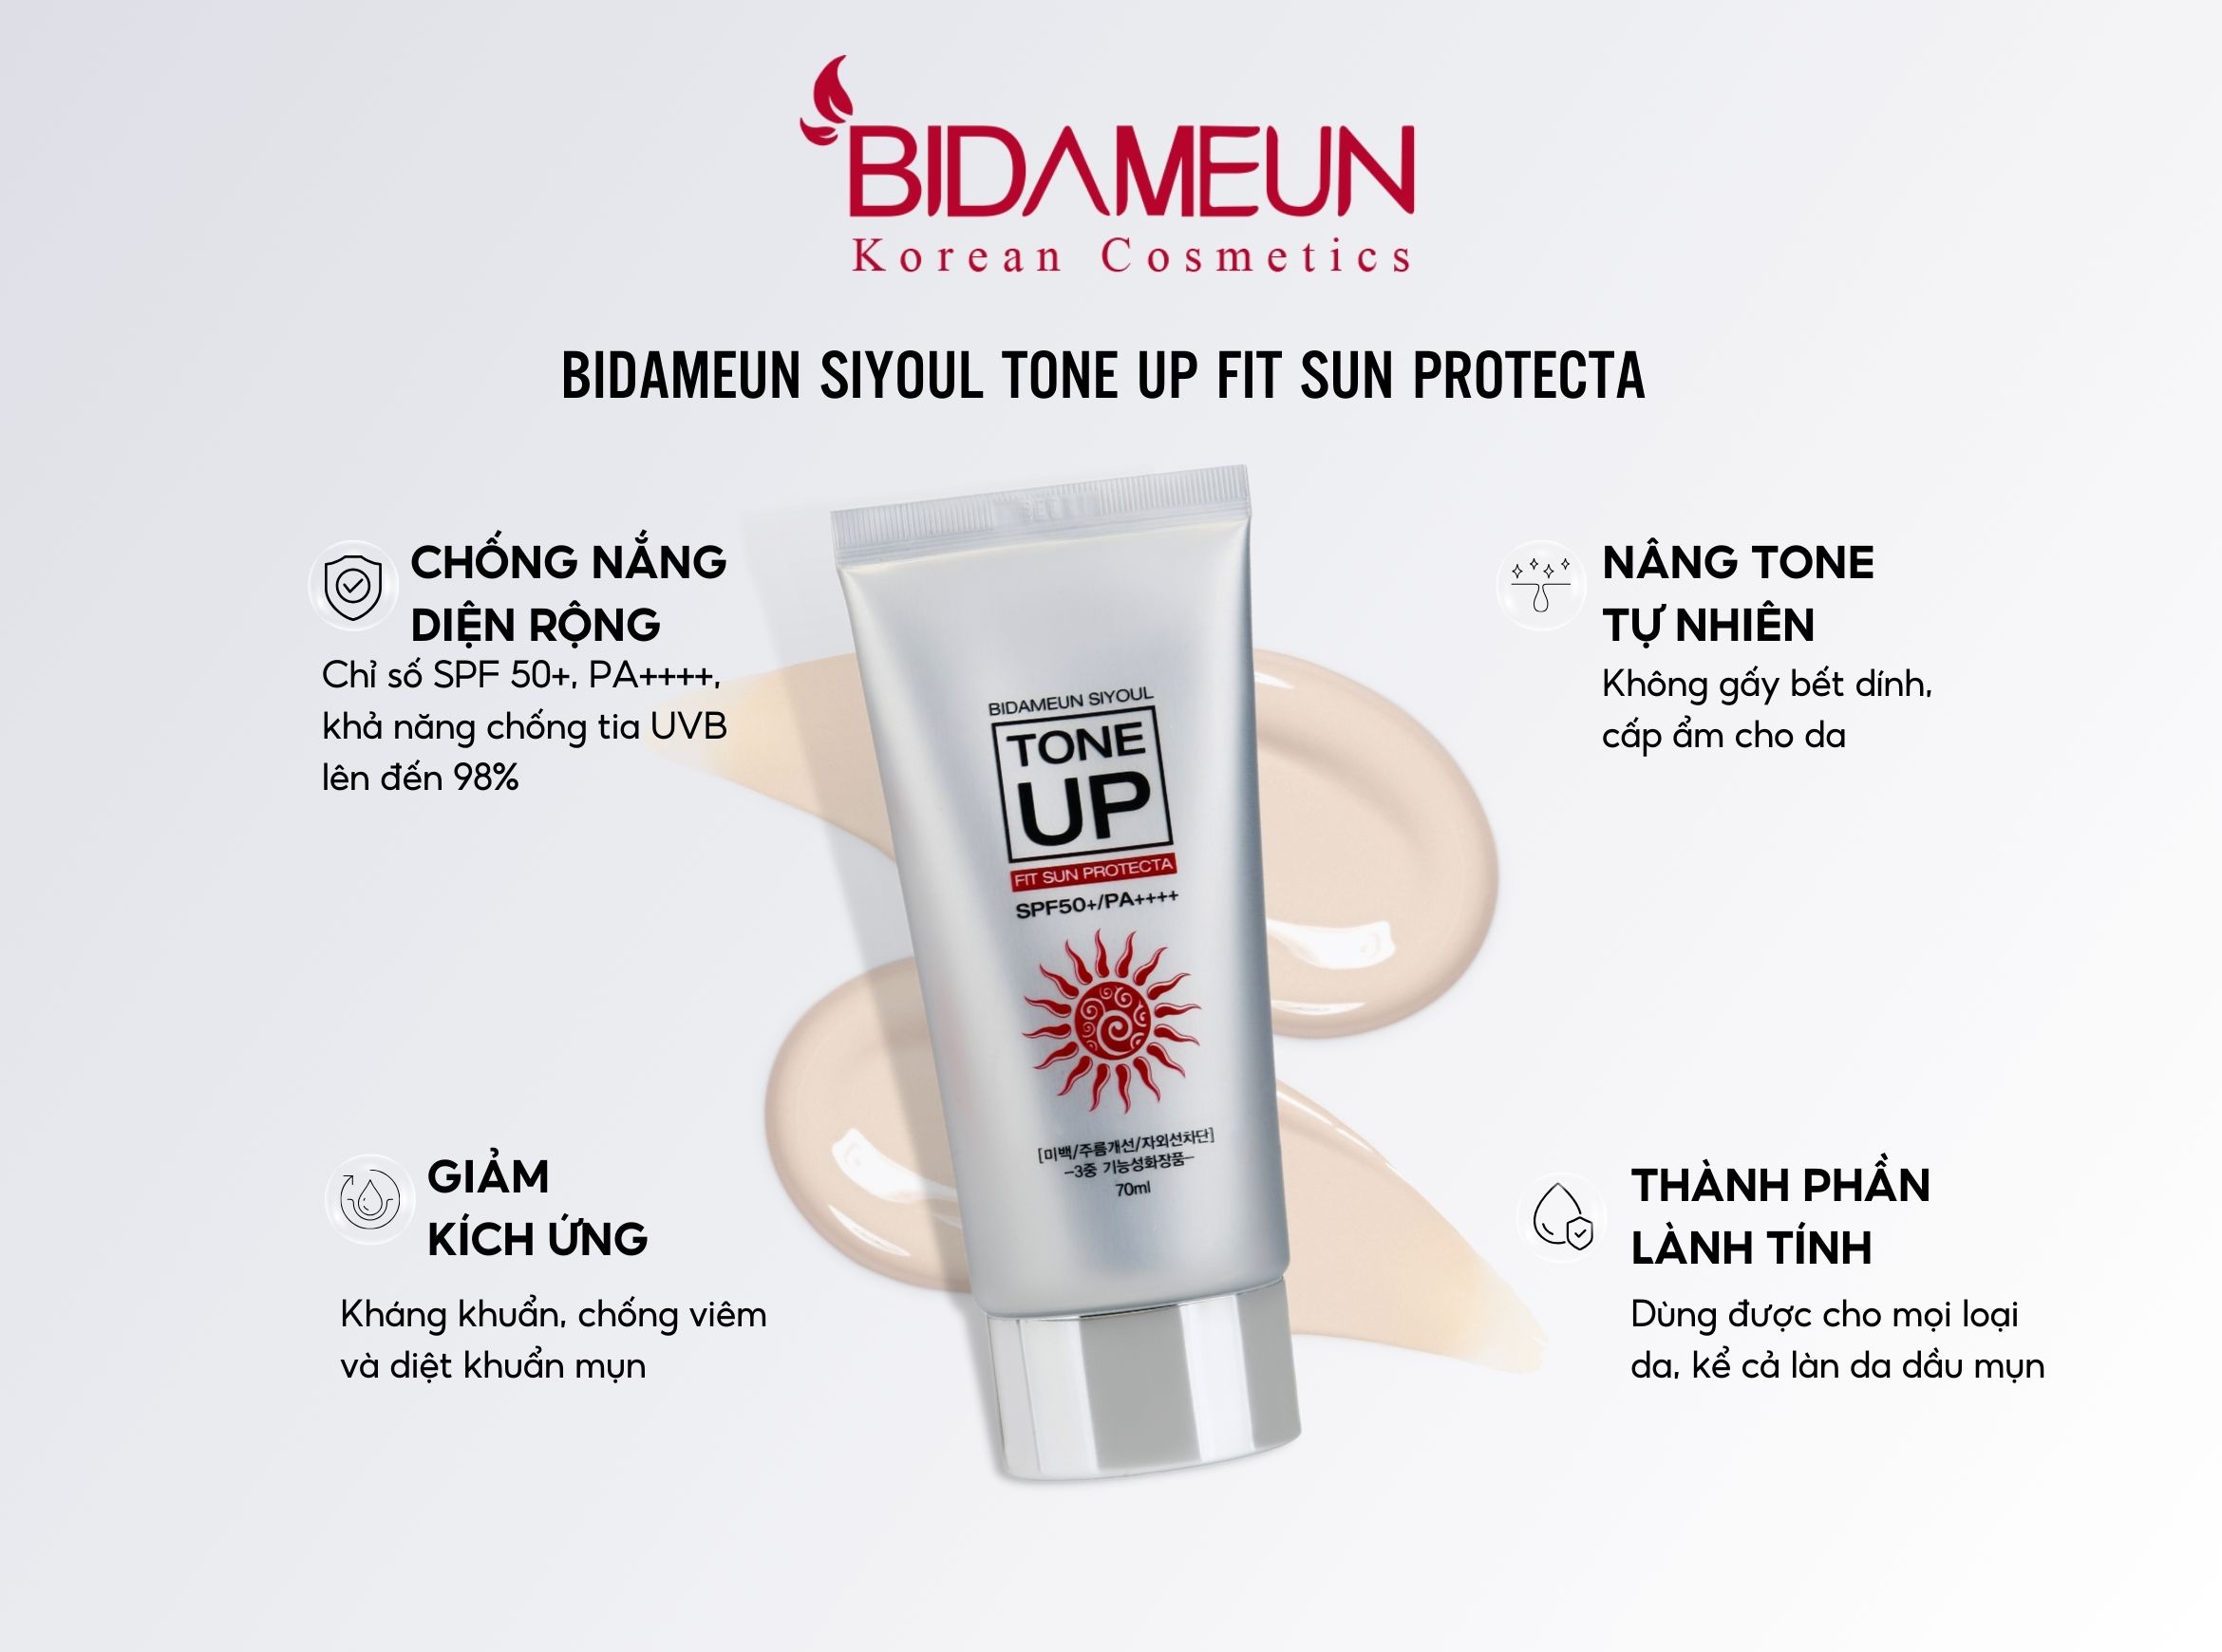 Kem chống nắng Bidameun Siyoul Tone up Fit Sun Protecta